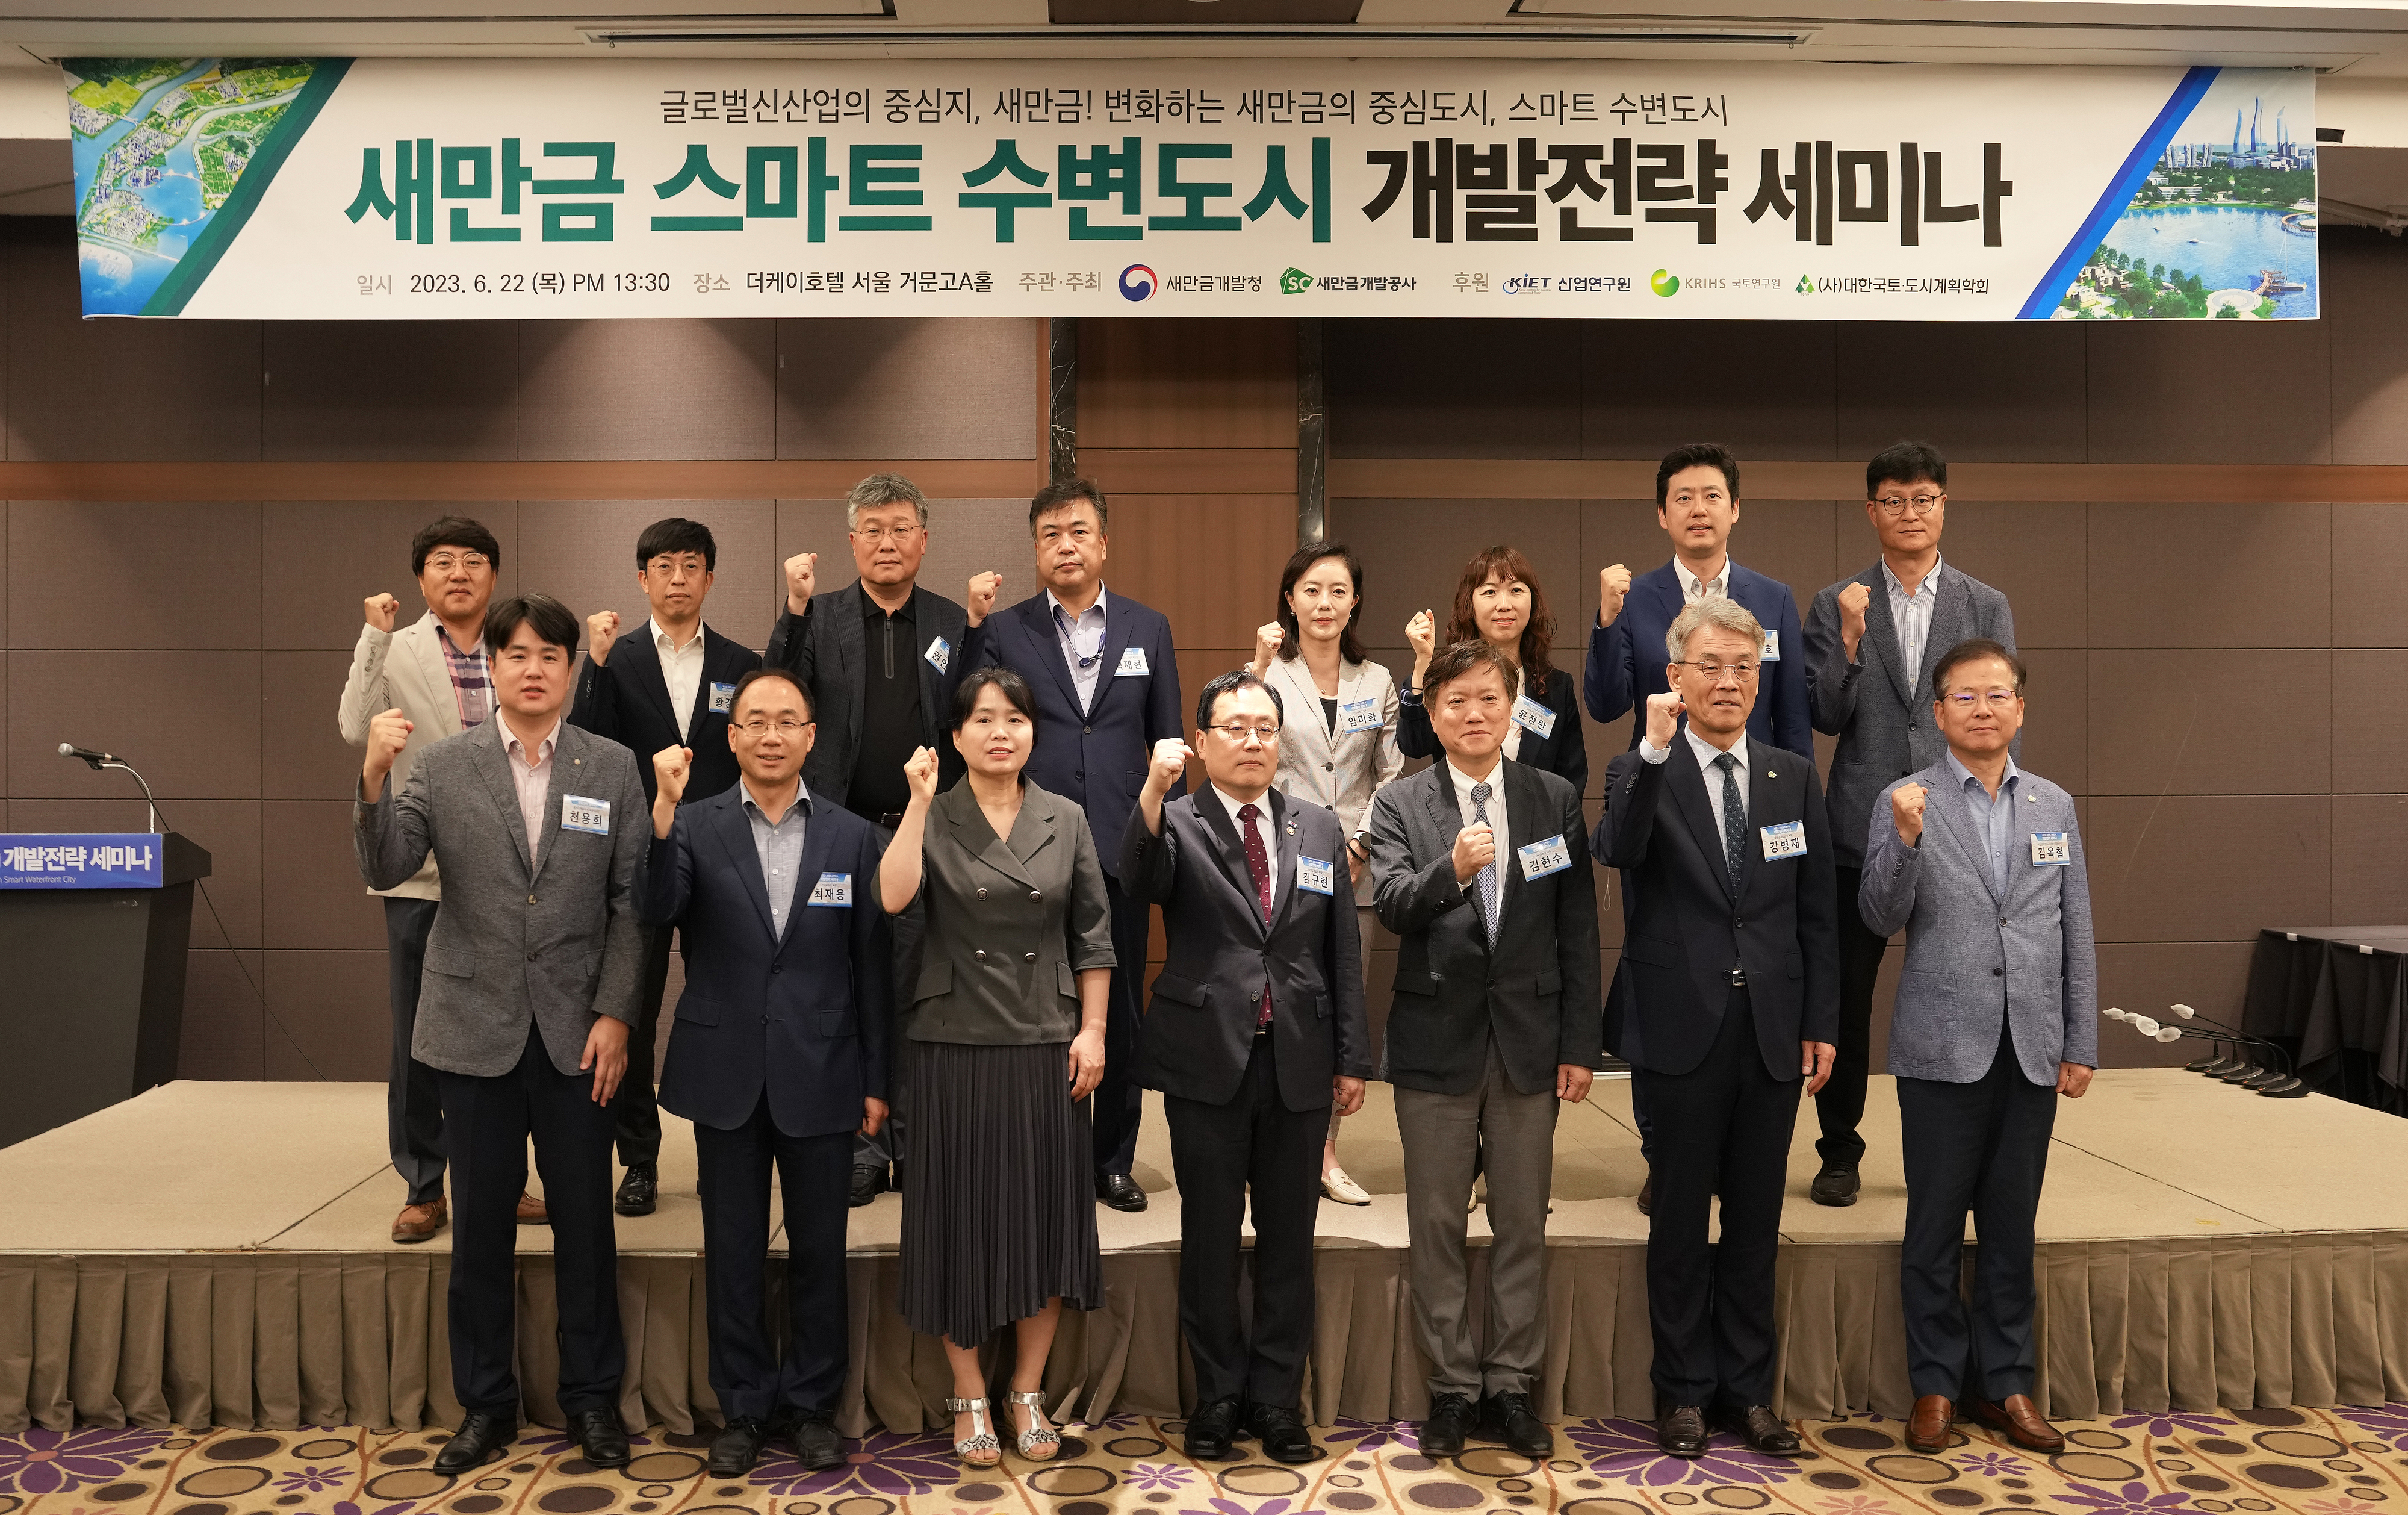 새만금개발청과 새만금개발공사는 22일 서울 더케이호텔에서 ‘새만금 스마트 수변도시’ 개발전략 마련을 위한 세미나를 개최했다. 새만금개발공사 제공